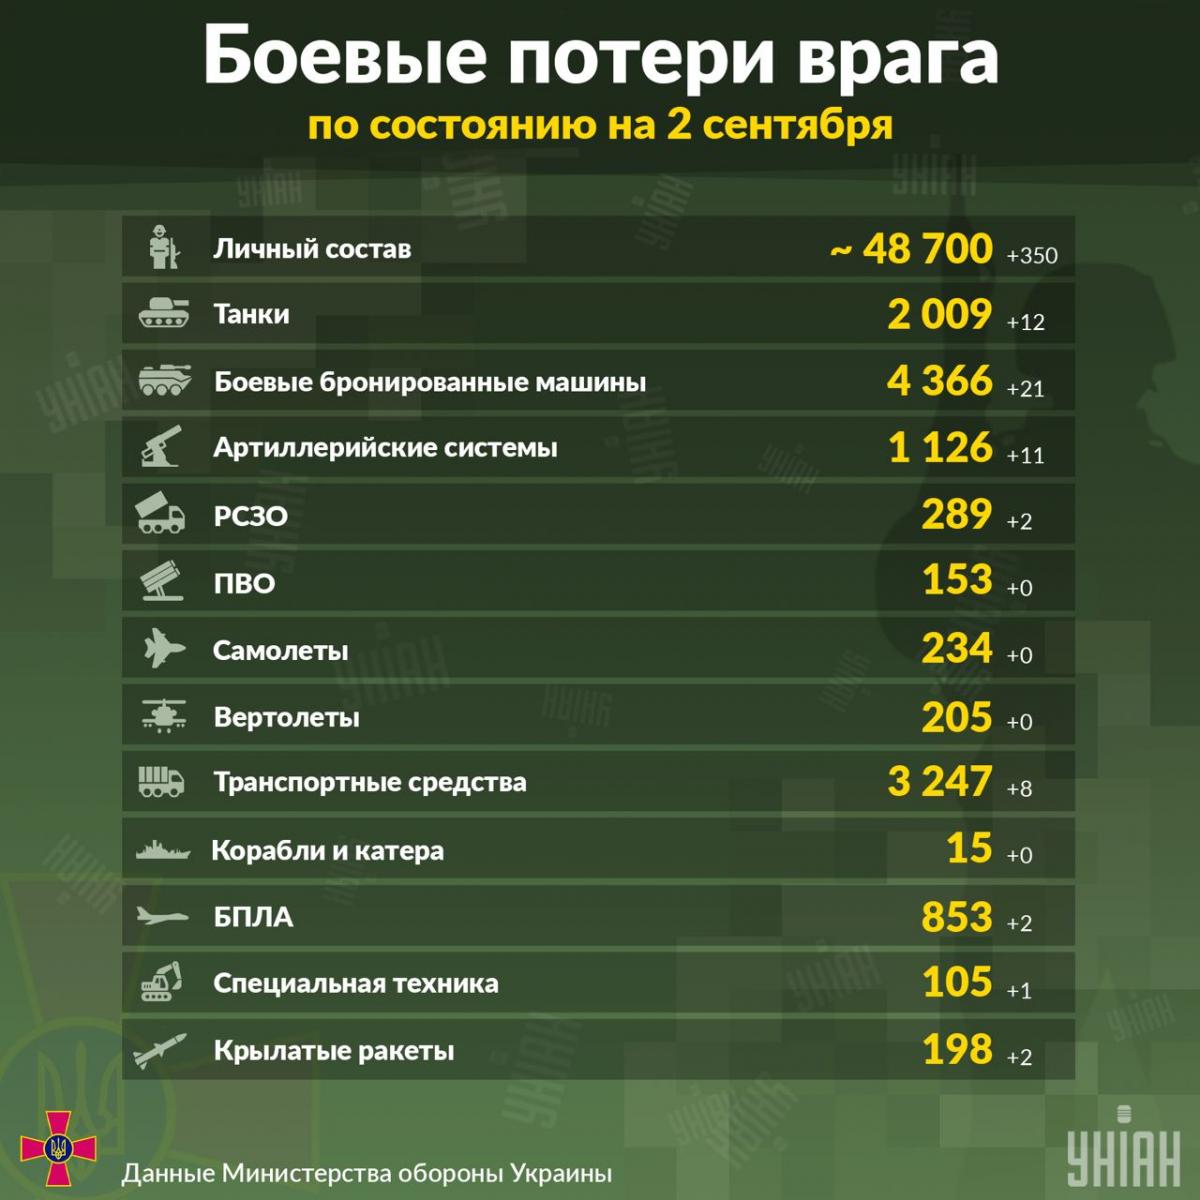 Общие боевые потери российских оккупантов в Украине по состоянию на 2 сентября / инфографика УНИАН